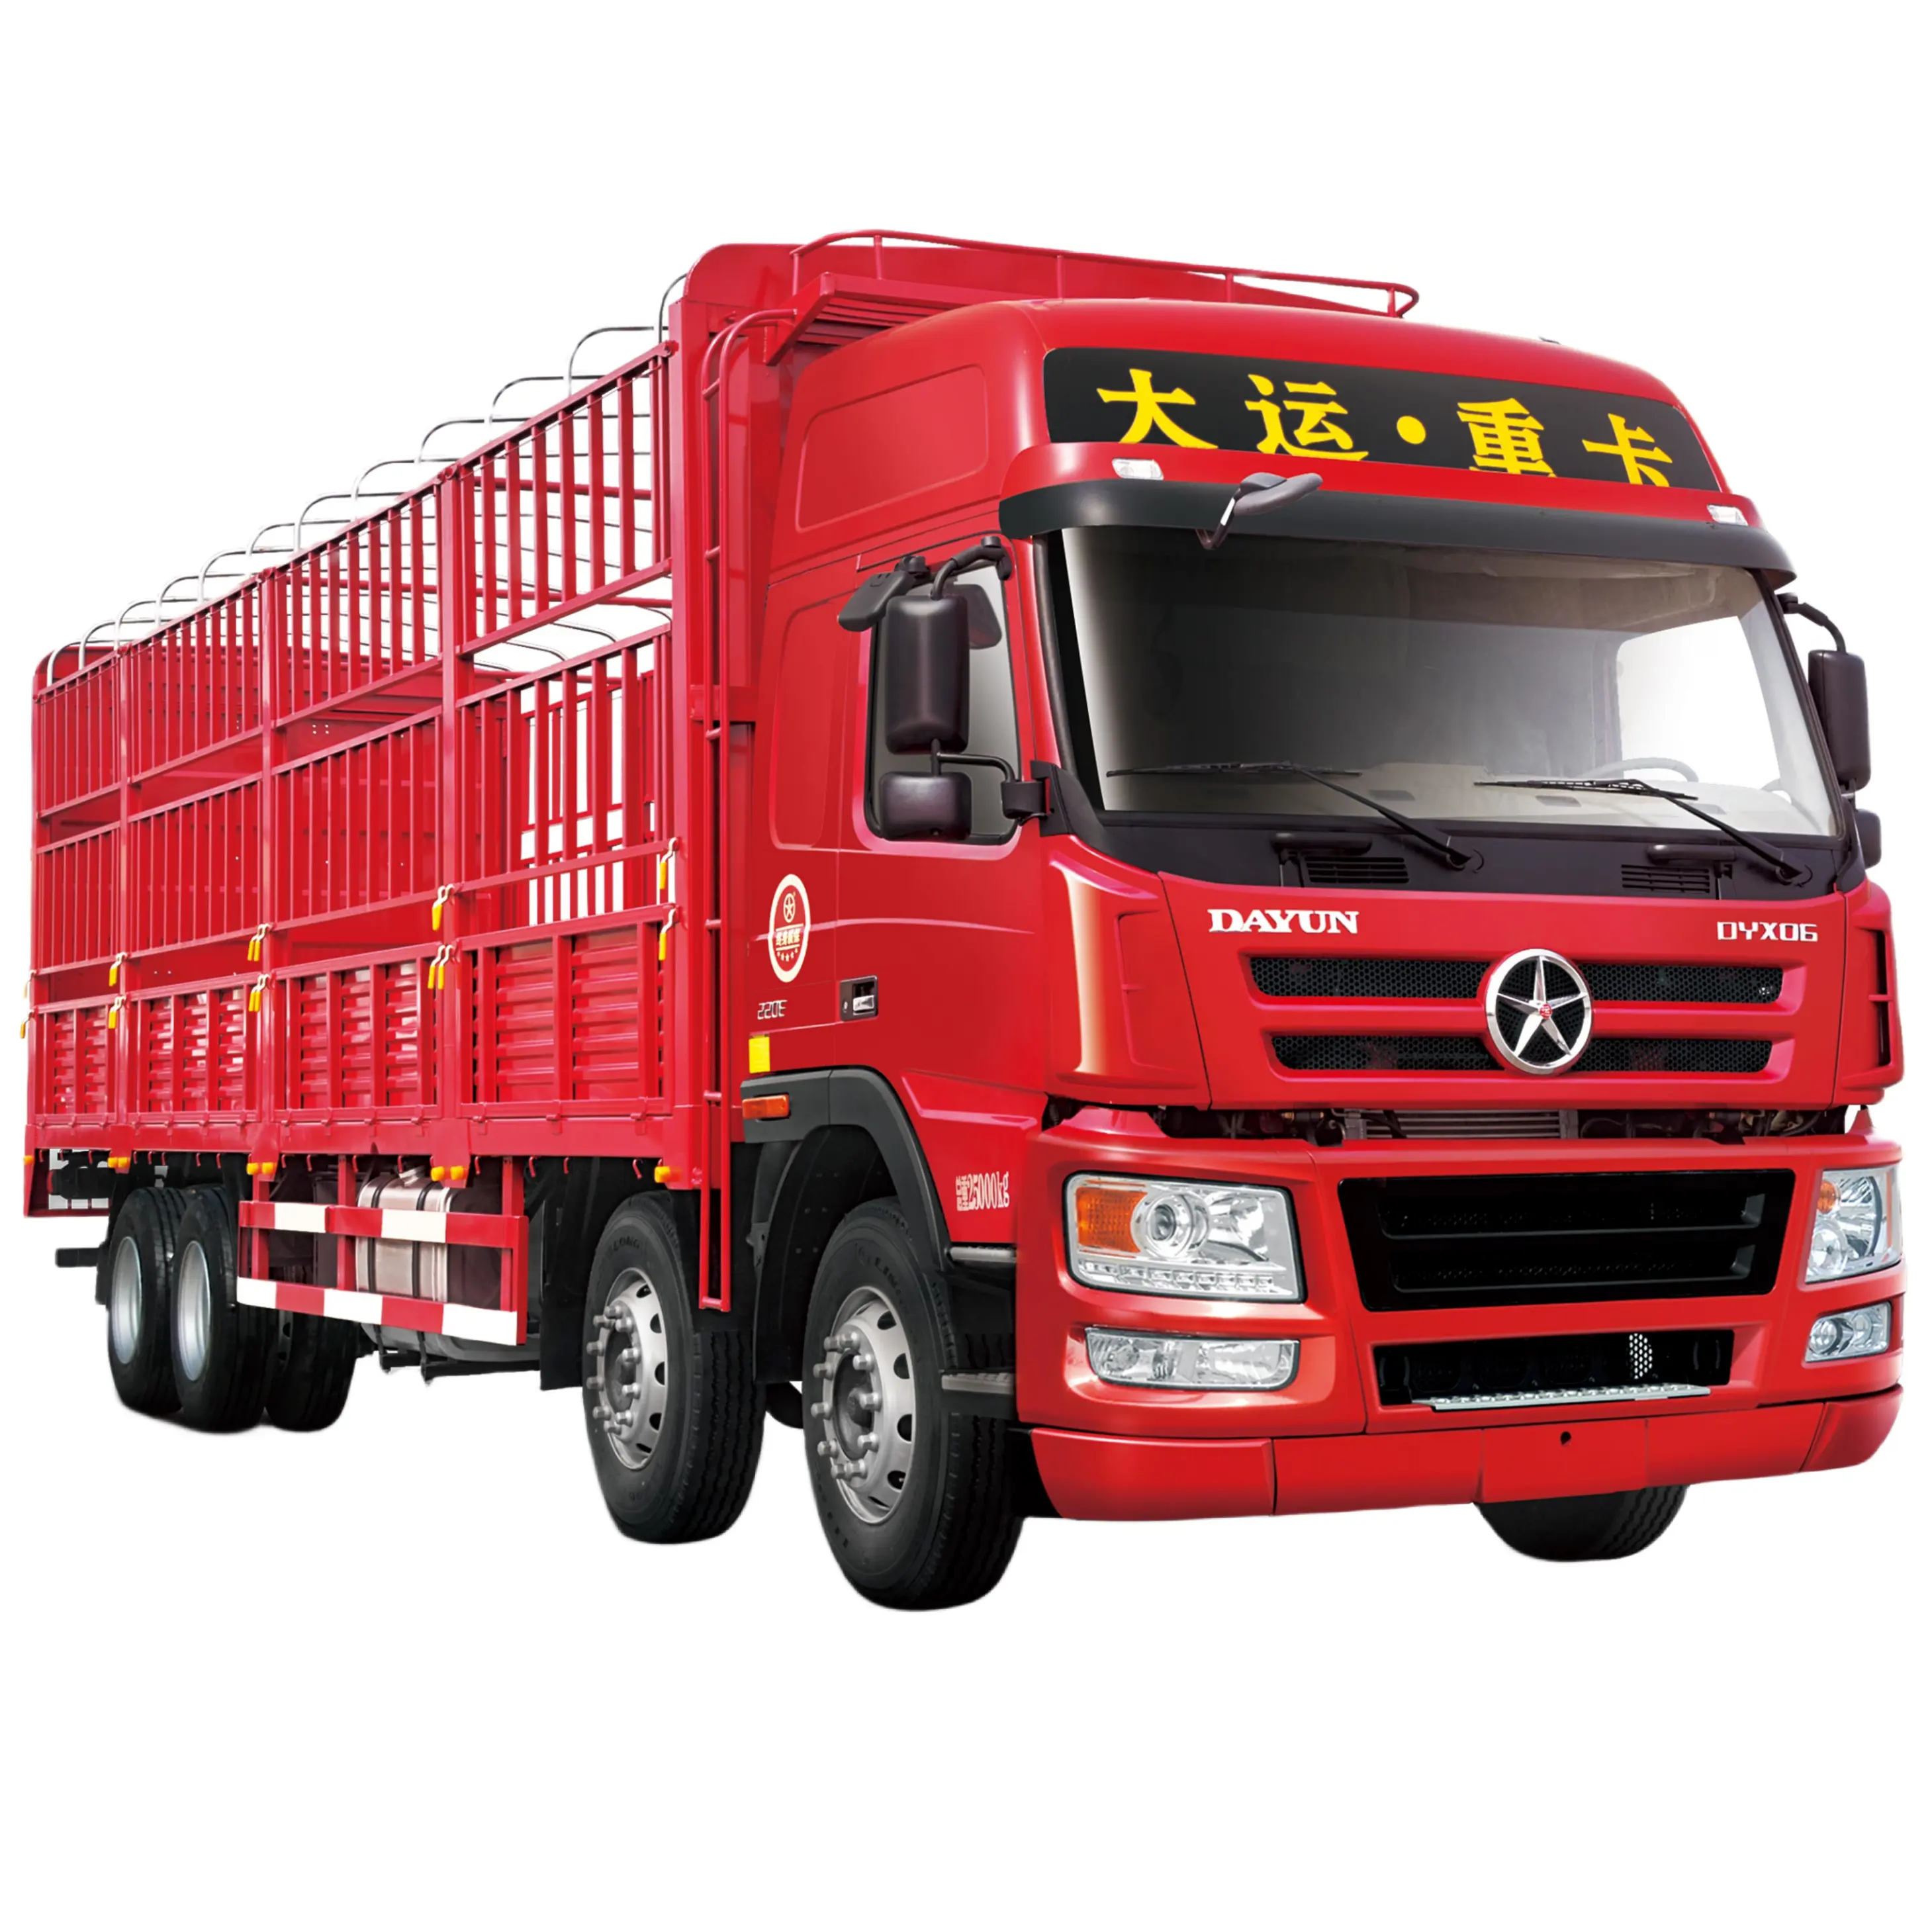 2023 नए n8e 8x4 ट्रक पिक-अप ट्रक चीन के यूनिवर्डे में हल्के वजन, मजबूत शक्ति और अच्छी अर्थव्यवस्था जैसे फायदे हैं।